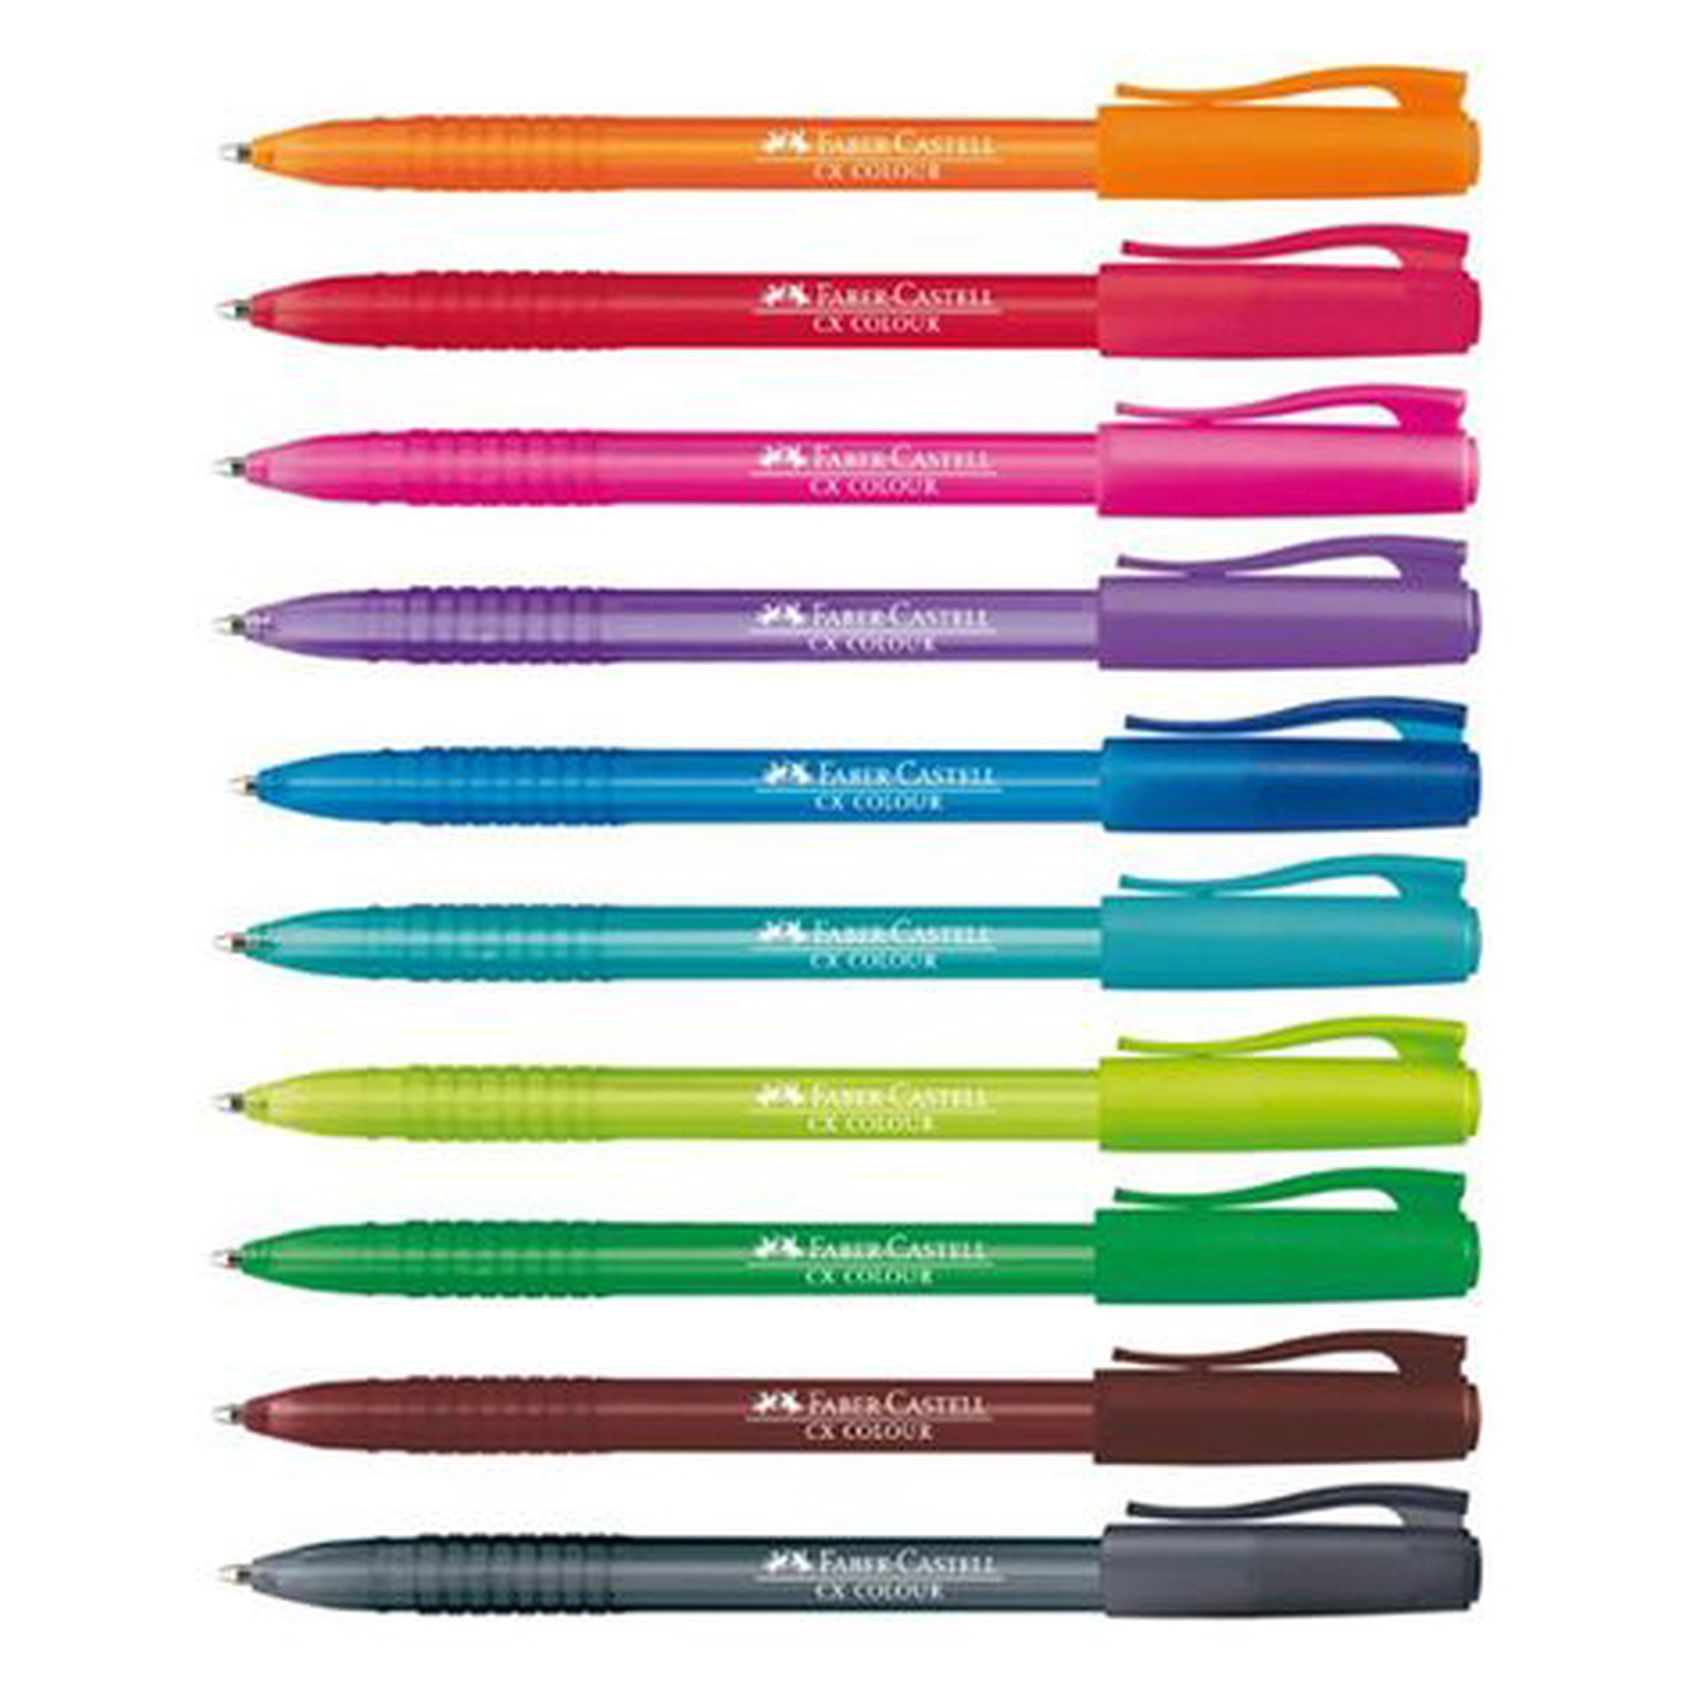 فايبر -كاستل سي أكس قلم حبر جاف - متعدد الألوان، 10 قطع